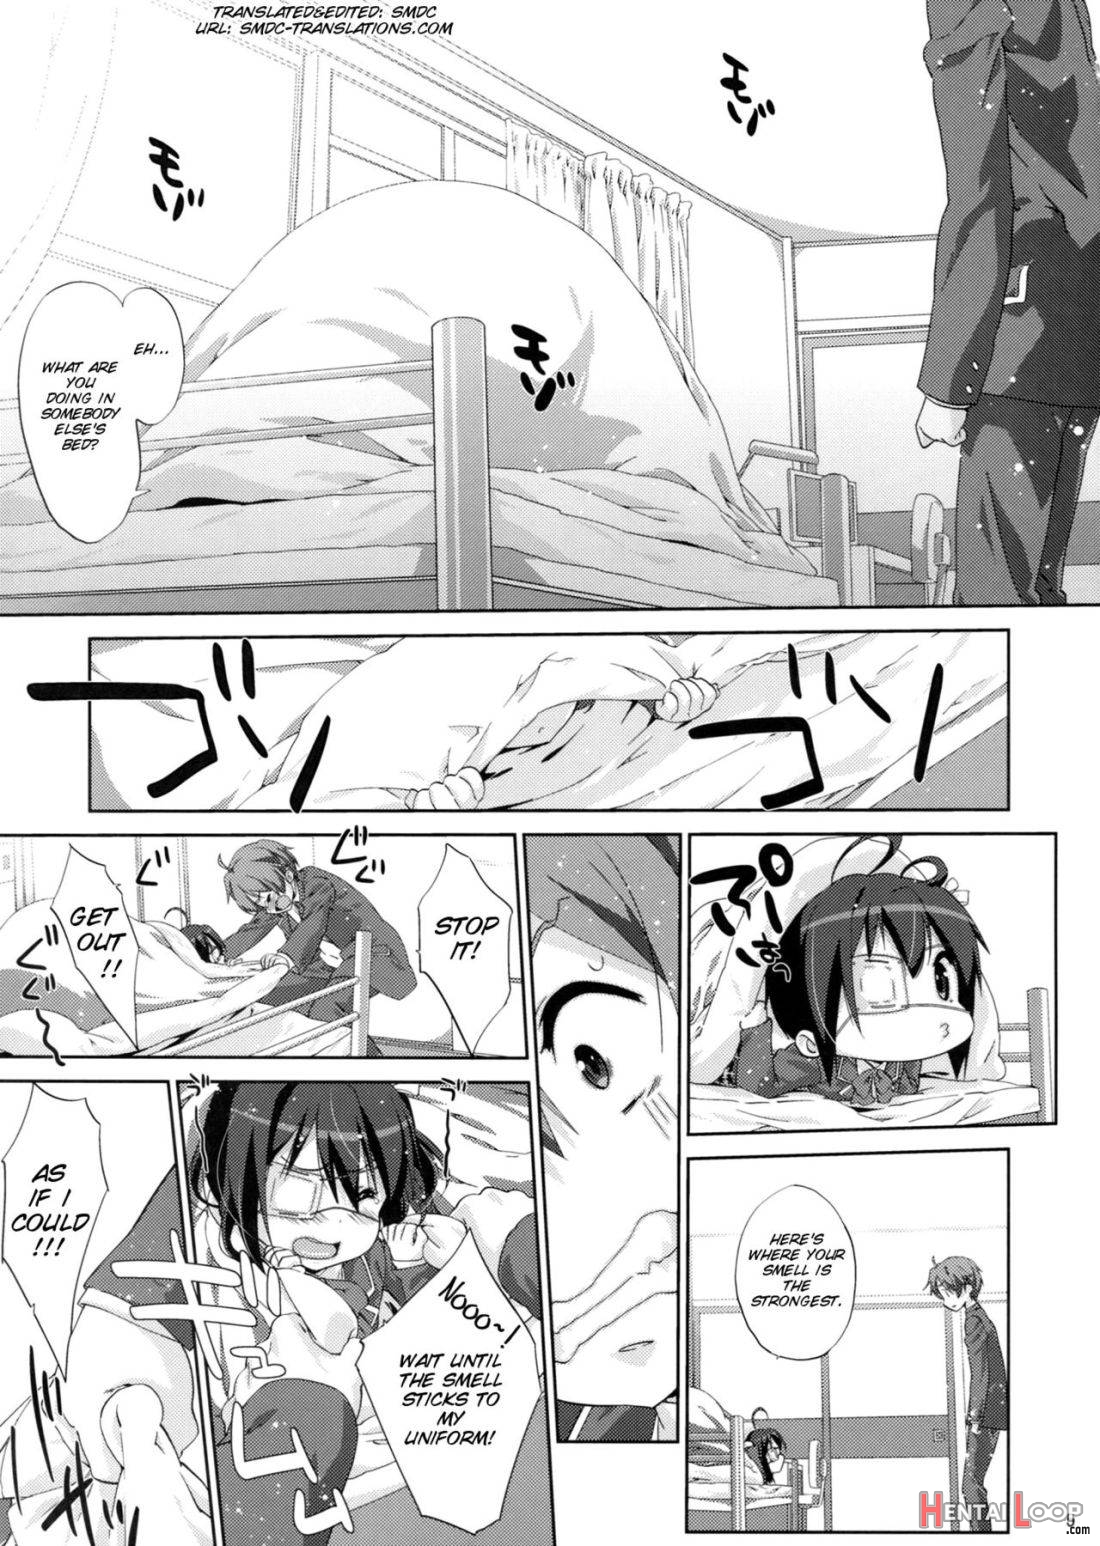 Rikka to Koi Shitai page 2